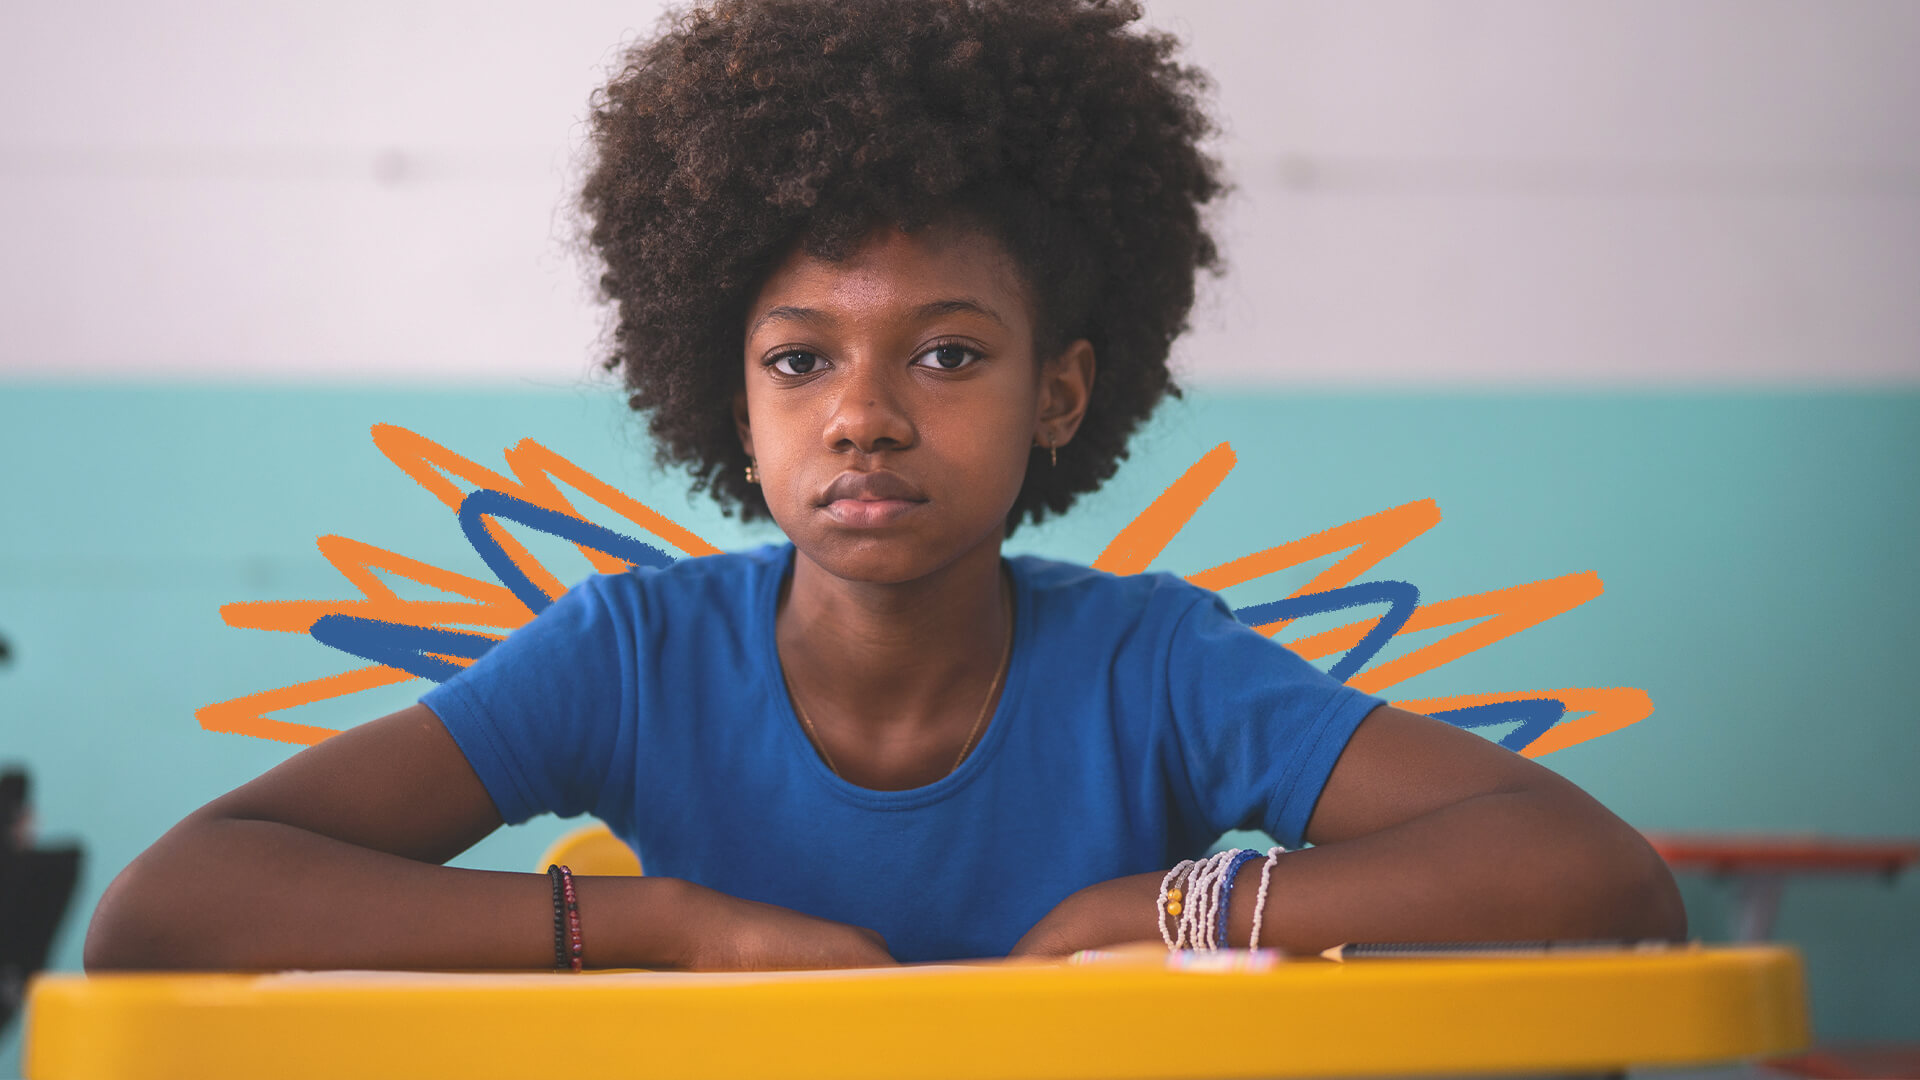 Fechamento das escolas: na imagem, uma menina negra de camiseta azul olha para frente com um semblante sério. A imagem possui intervenções de rabiscos coloridos.